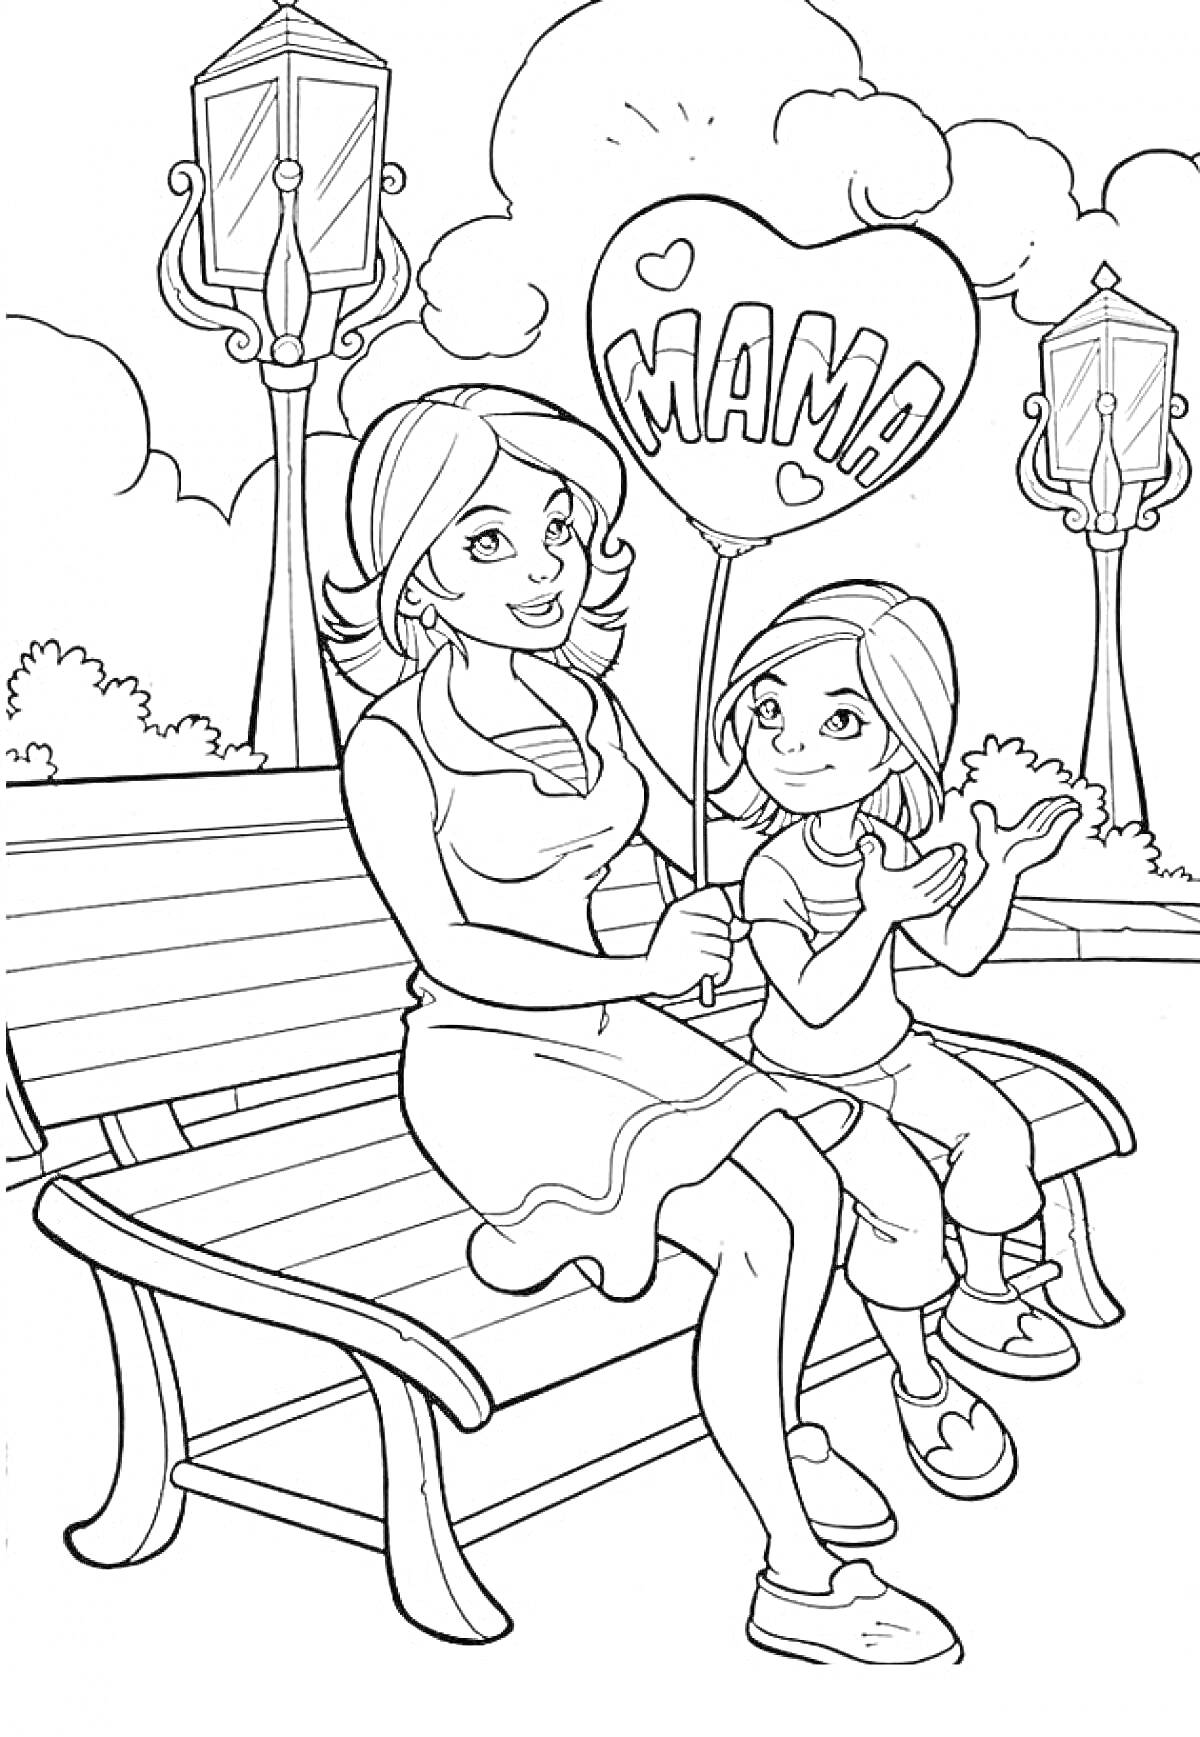 Мама и дочка на скамейке в парке с воздушным шаром